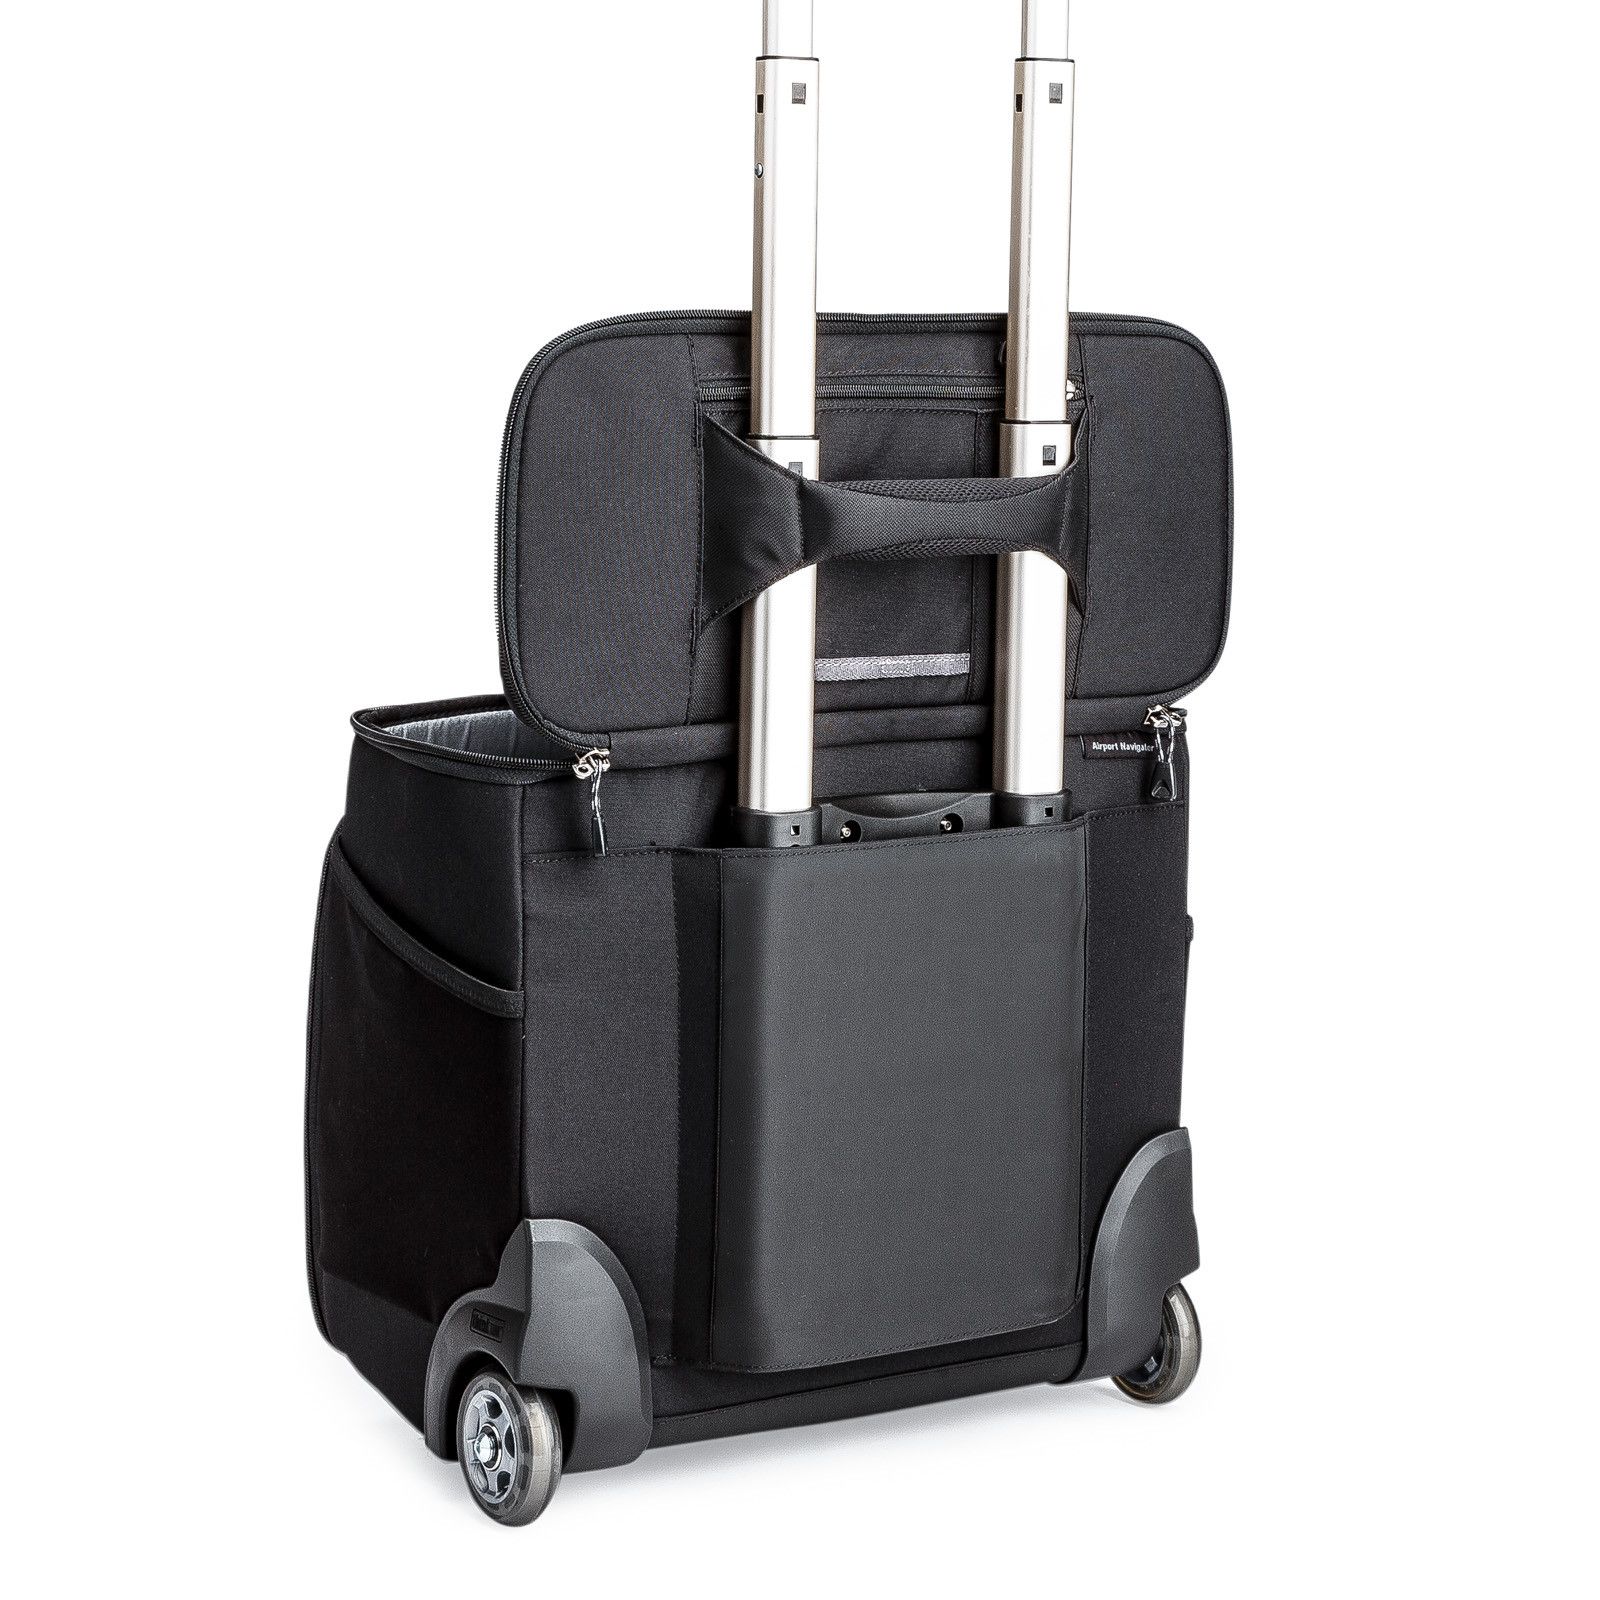 La ingeniosa maleta a la que se le quitan las ruedas para no pagar por  llevar equipaje en el avión